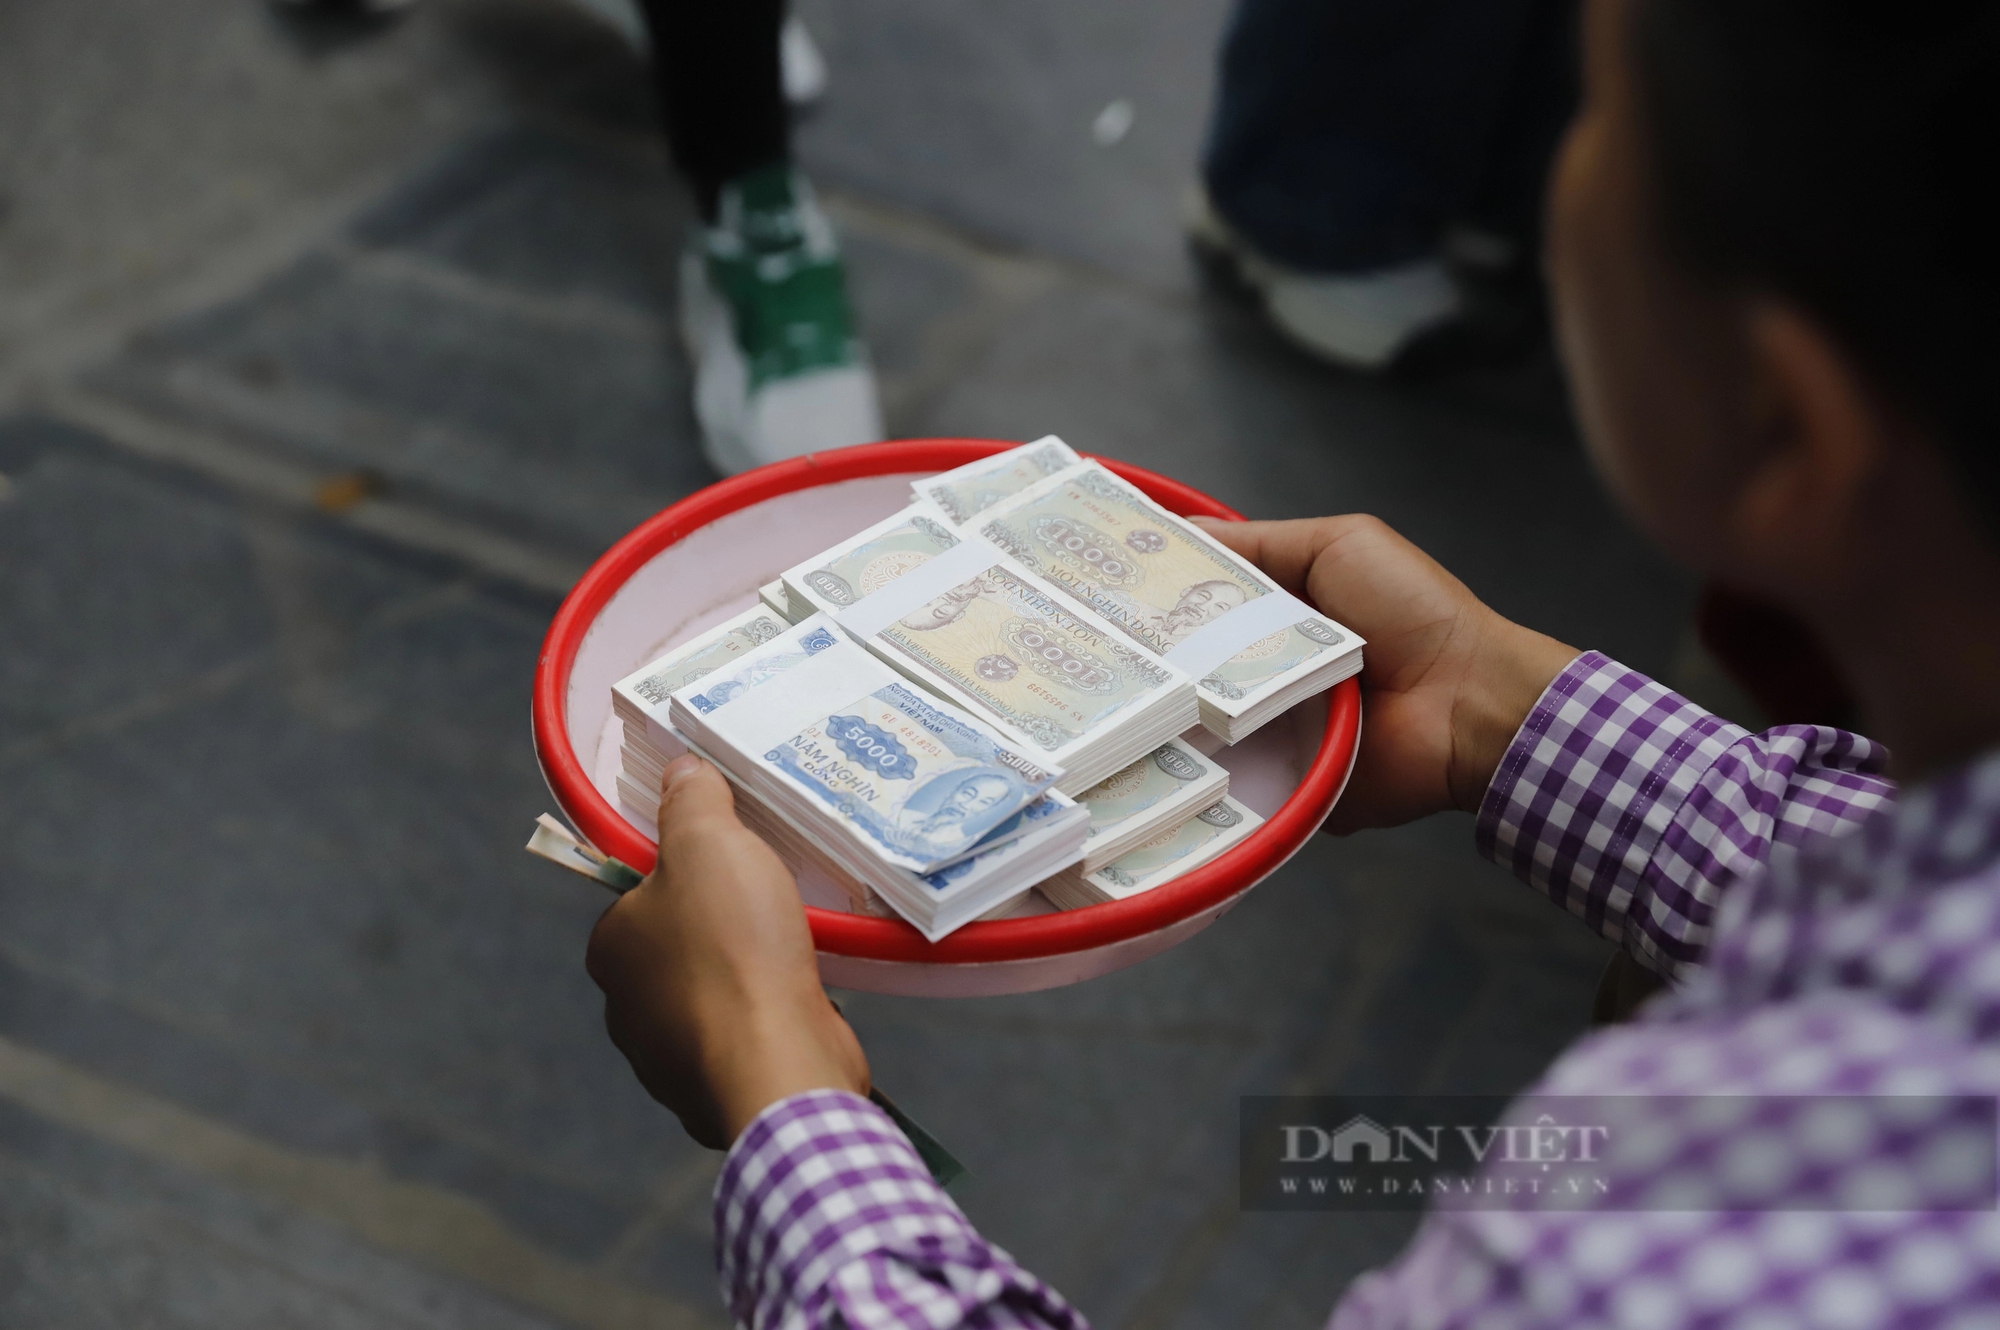 Phí đổi tiền lẻ lên tới 18%, thịt bò giá 250.000 đồng/kg tại chợ Viềng, Phủ Dầy Nam Định hút khách- Ảnh 3.